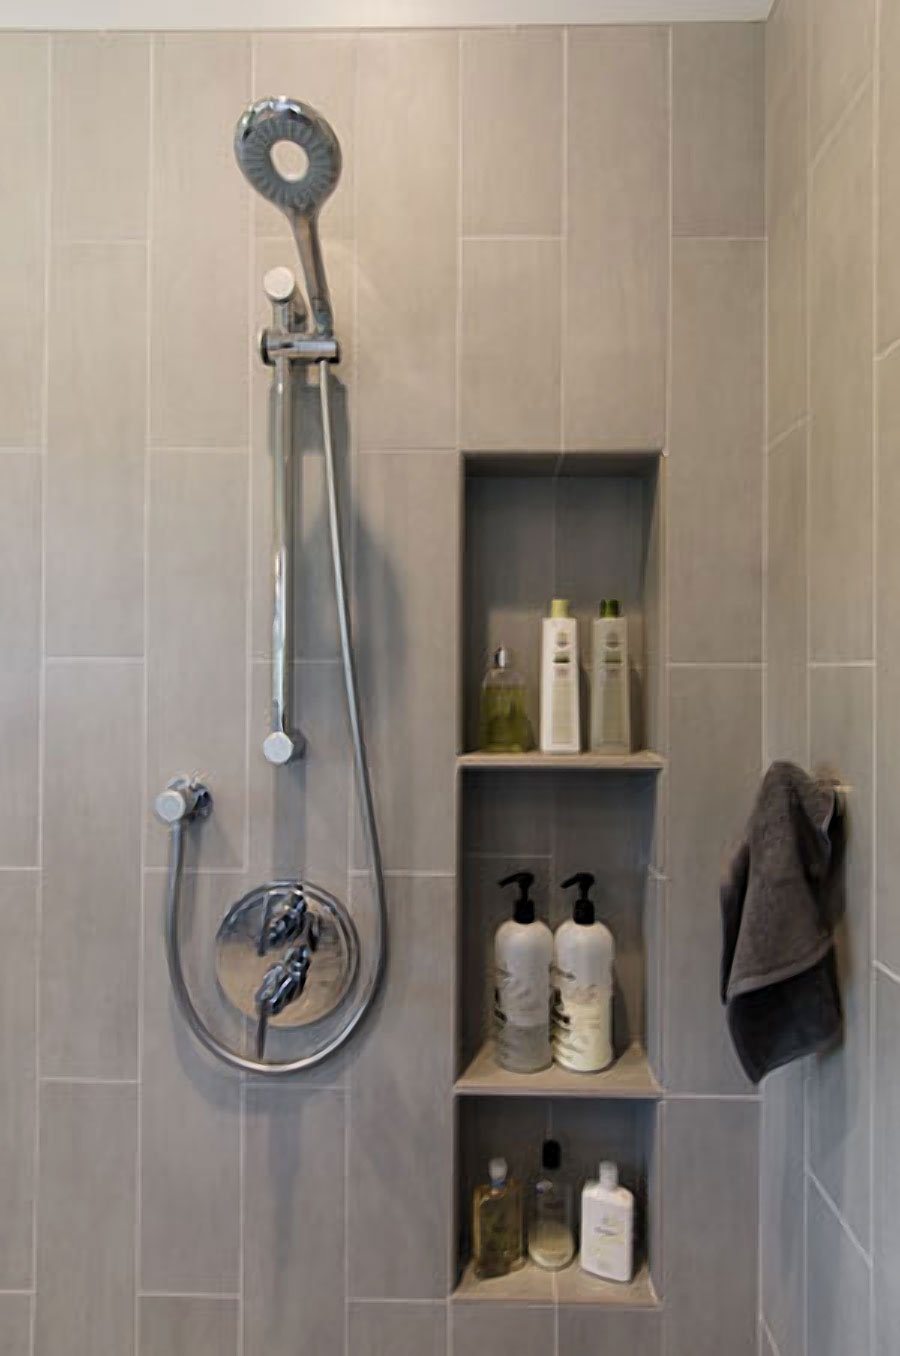 https://www.harrelldesignbuild.com/wp-content/uploads/2013/09/bathroom-shower-shelves-LARGER.jpg